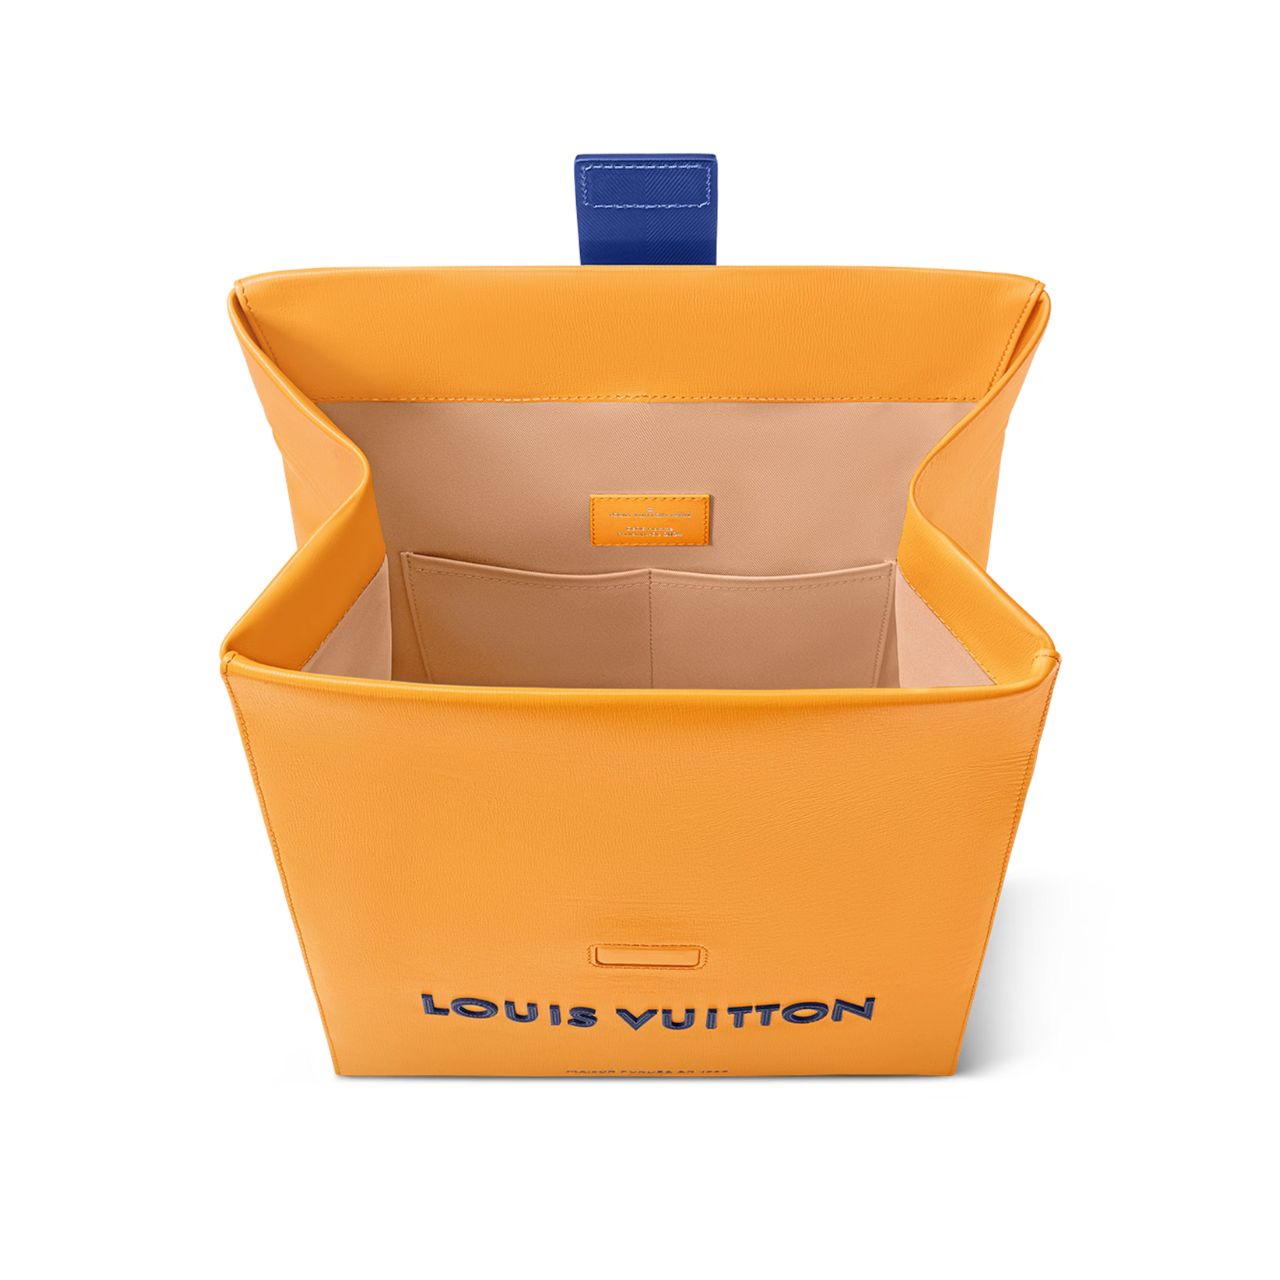 Πάρε το φαγητό σου με στυλ στο γραφείο - To lunchbox της Louis Vuitton έχει τον τρόπο